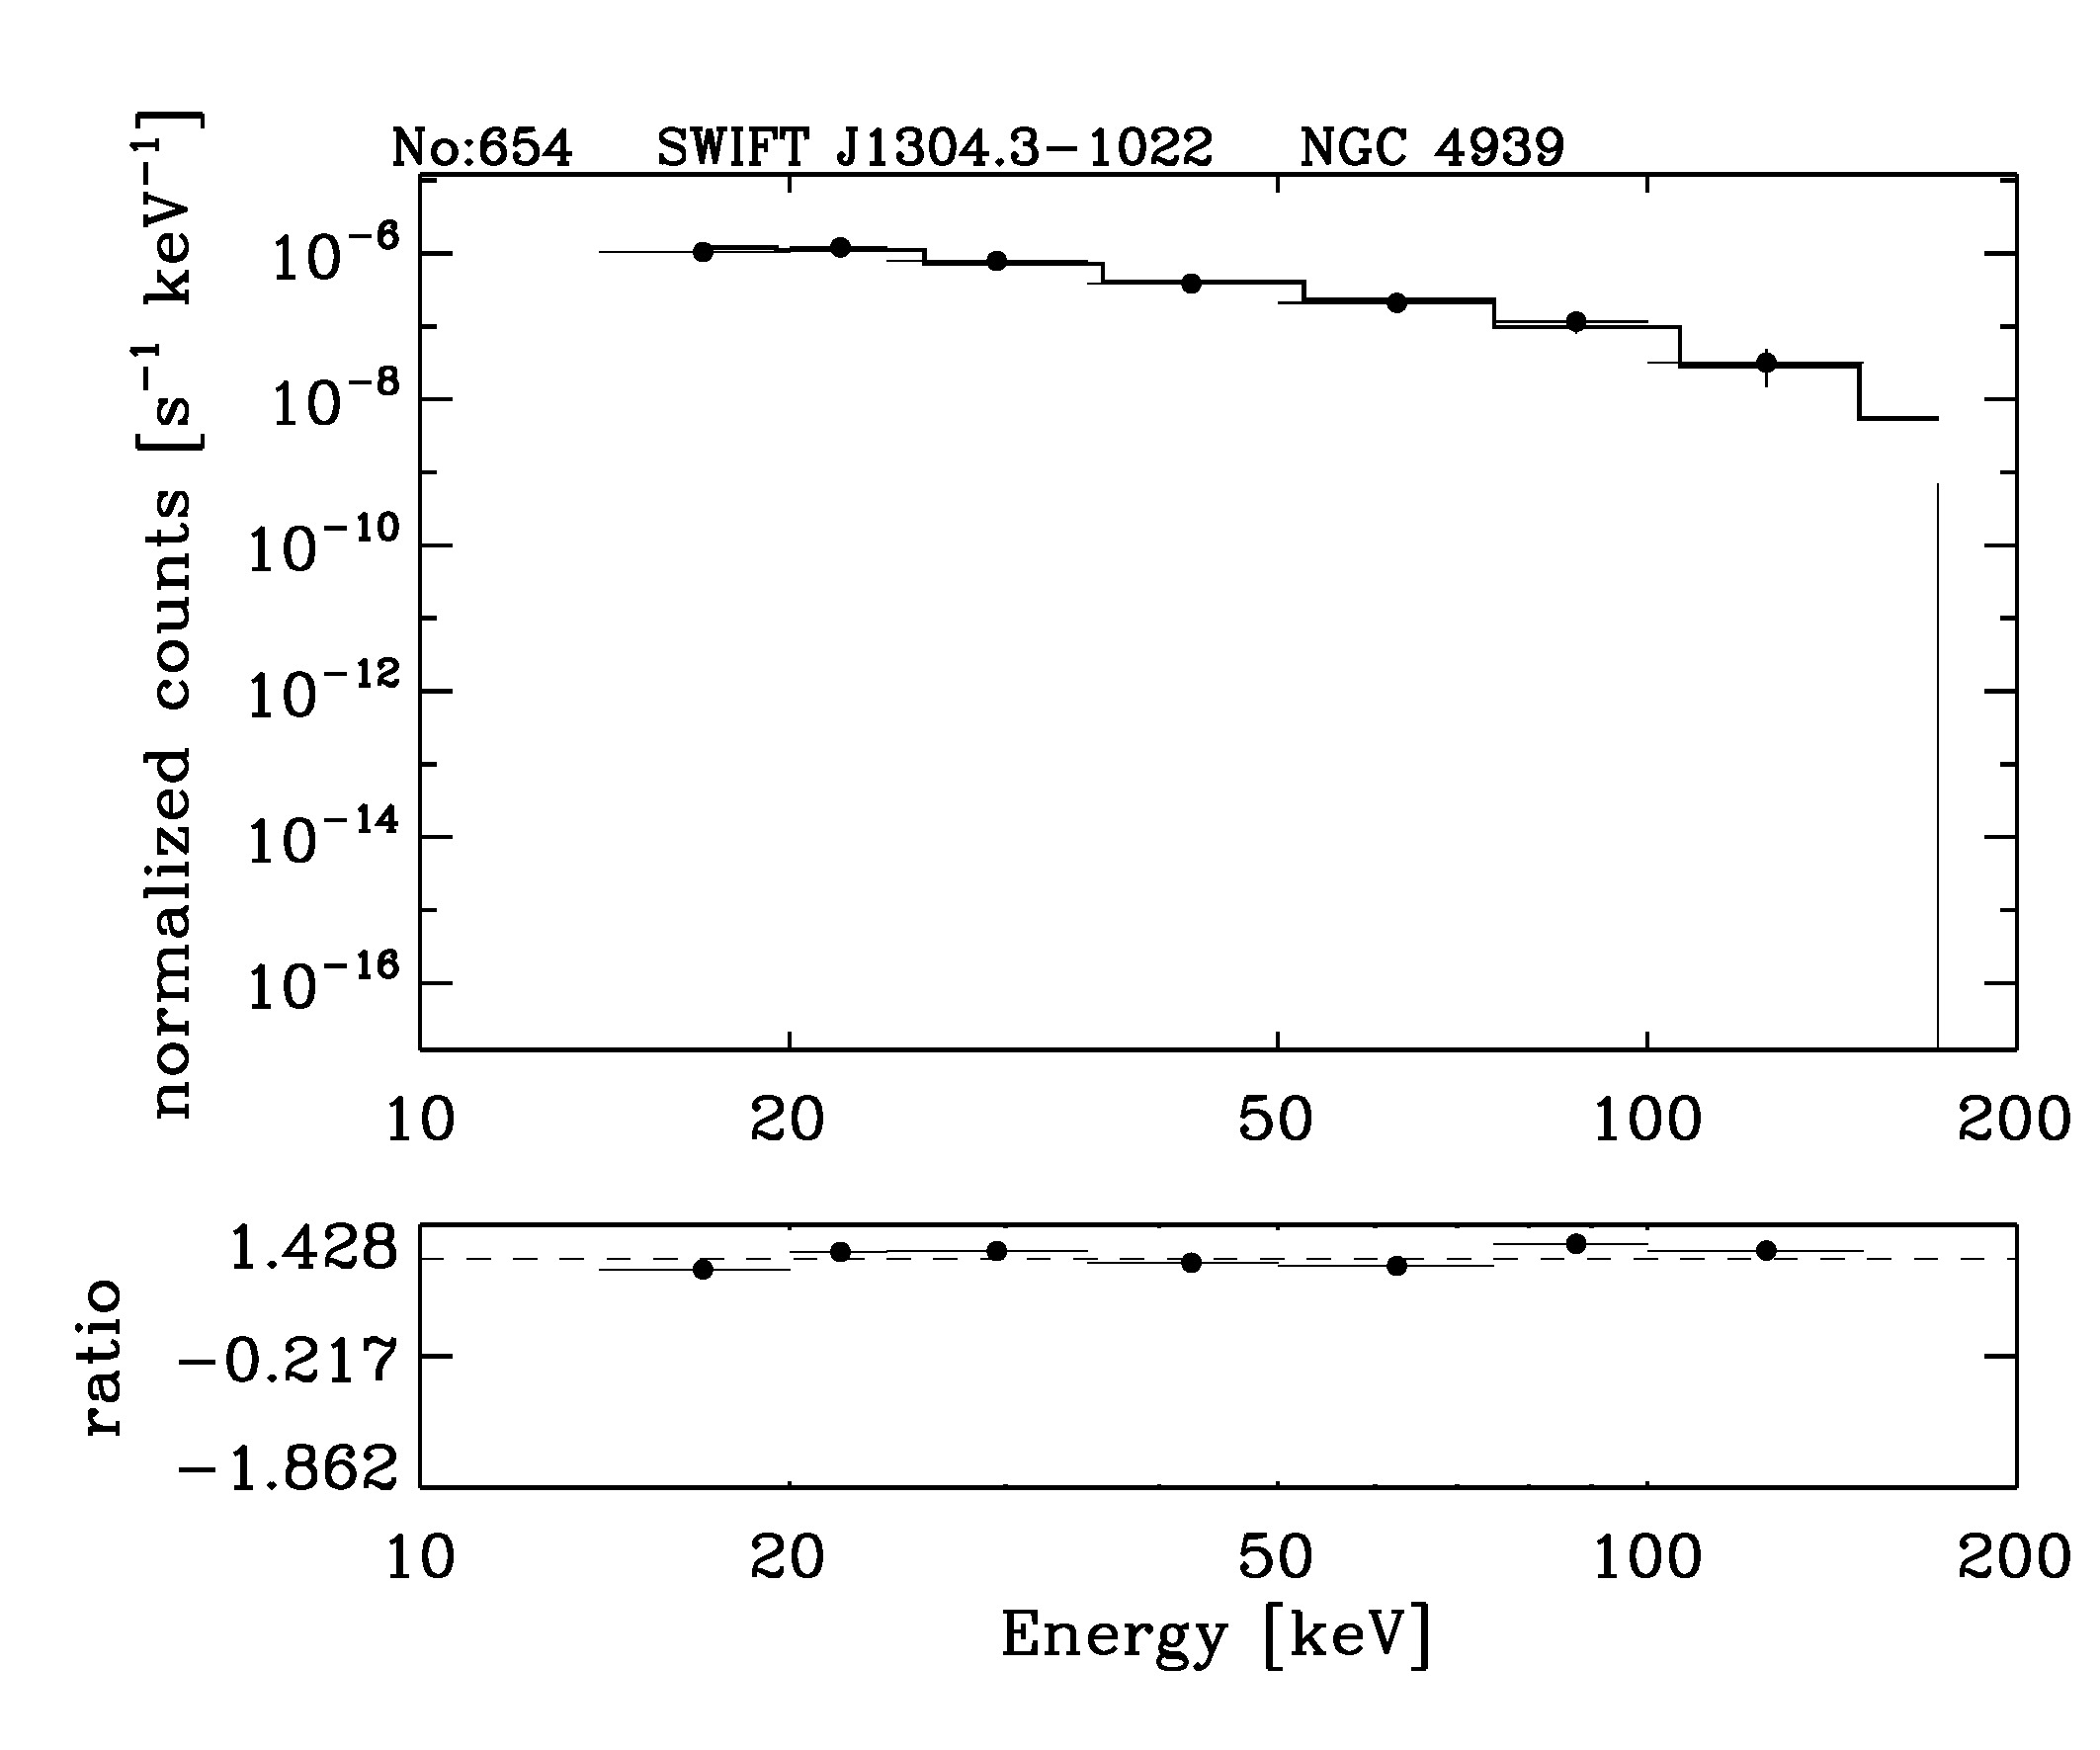 BAT Spectrum for SWIFT J1304.3-1022